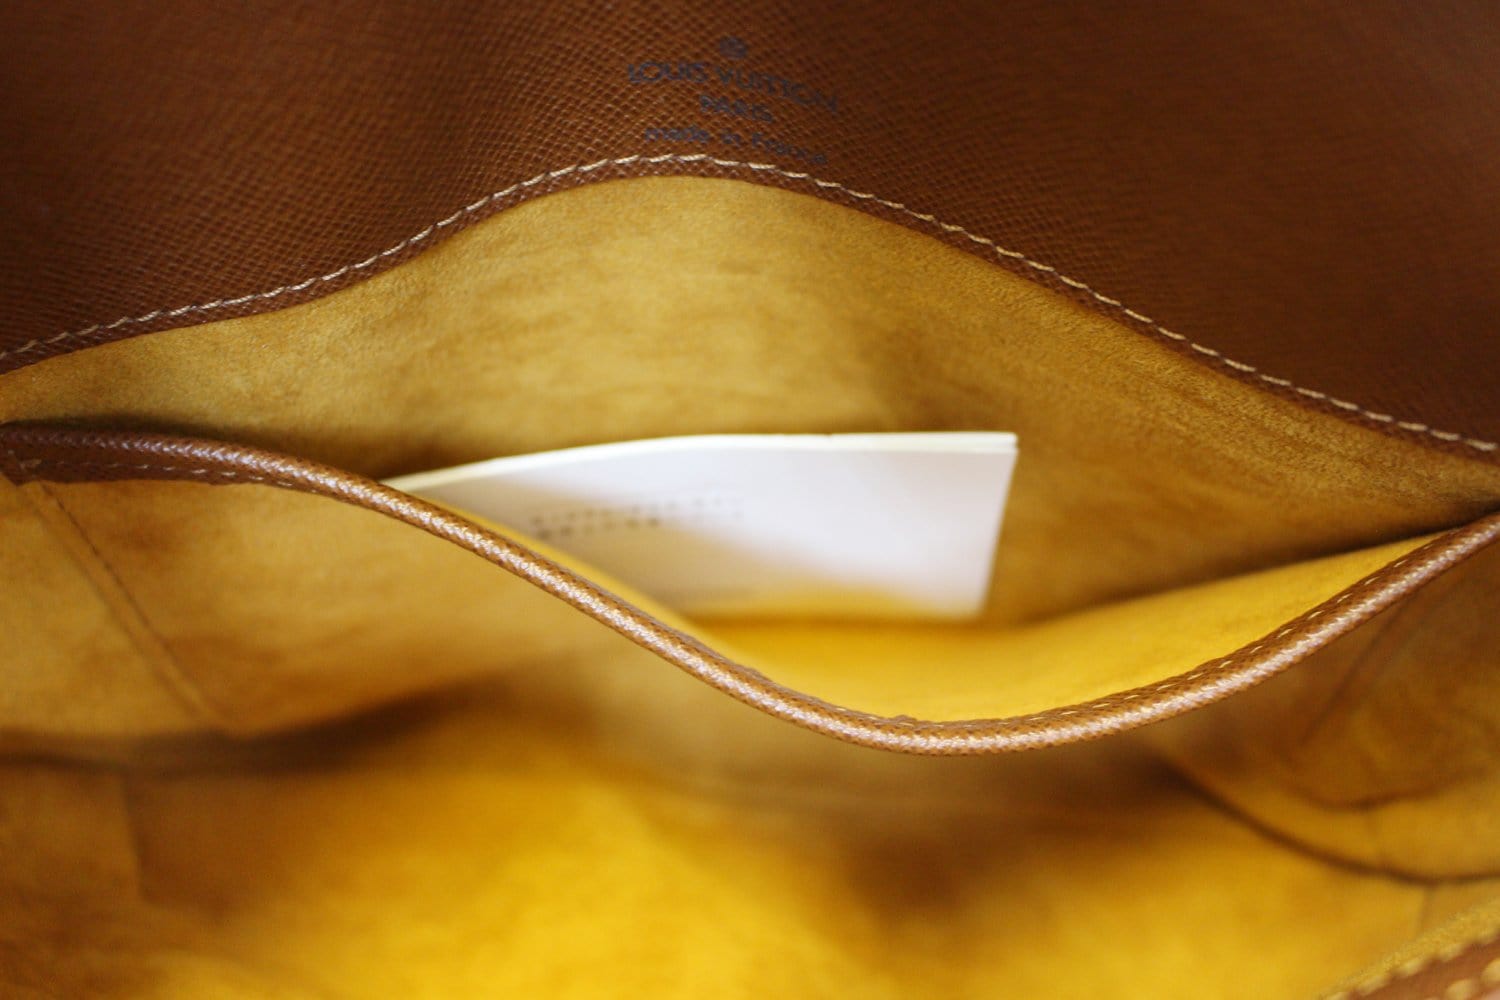 Ring Saddle Bag - Tango Yellow